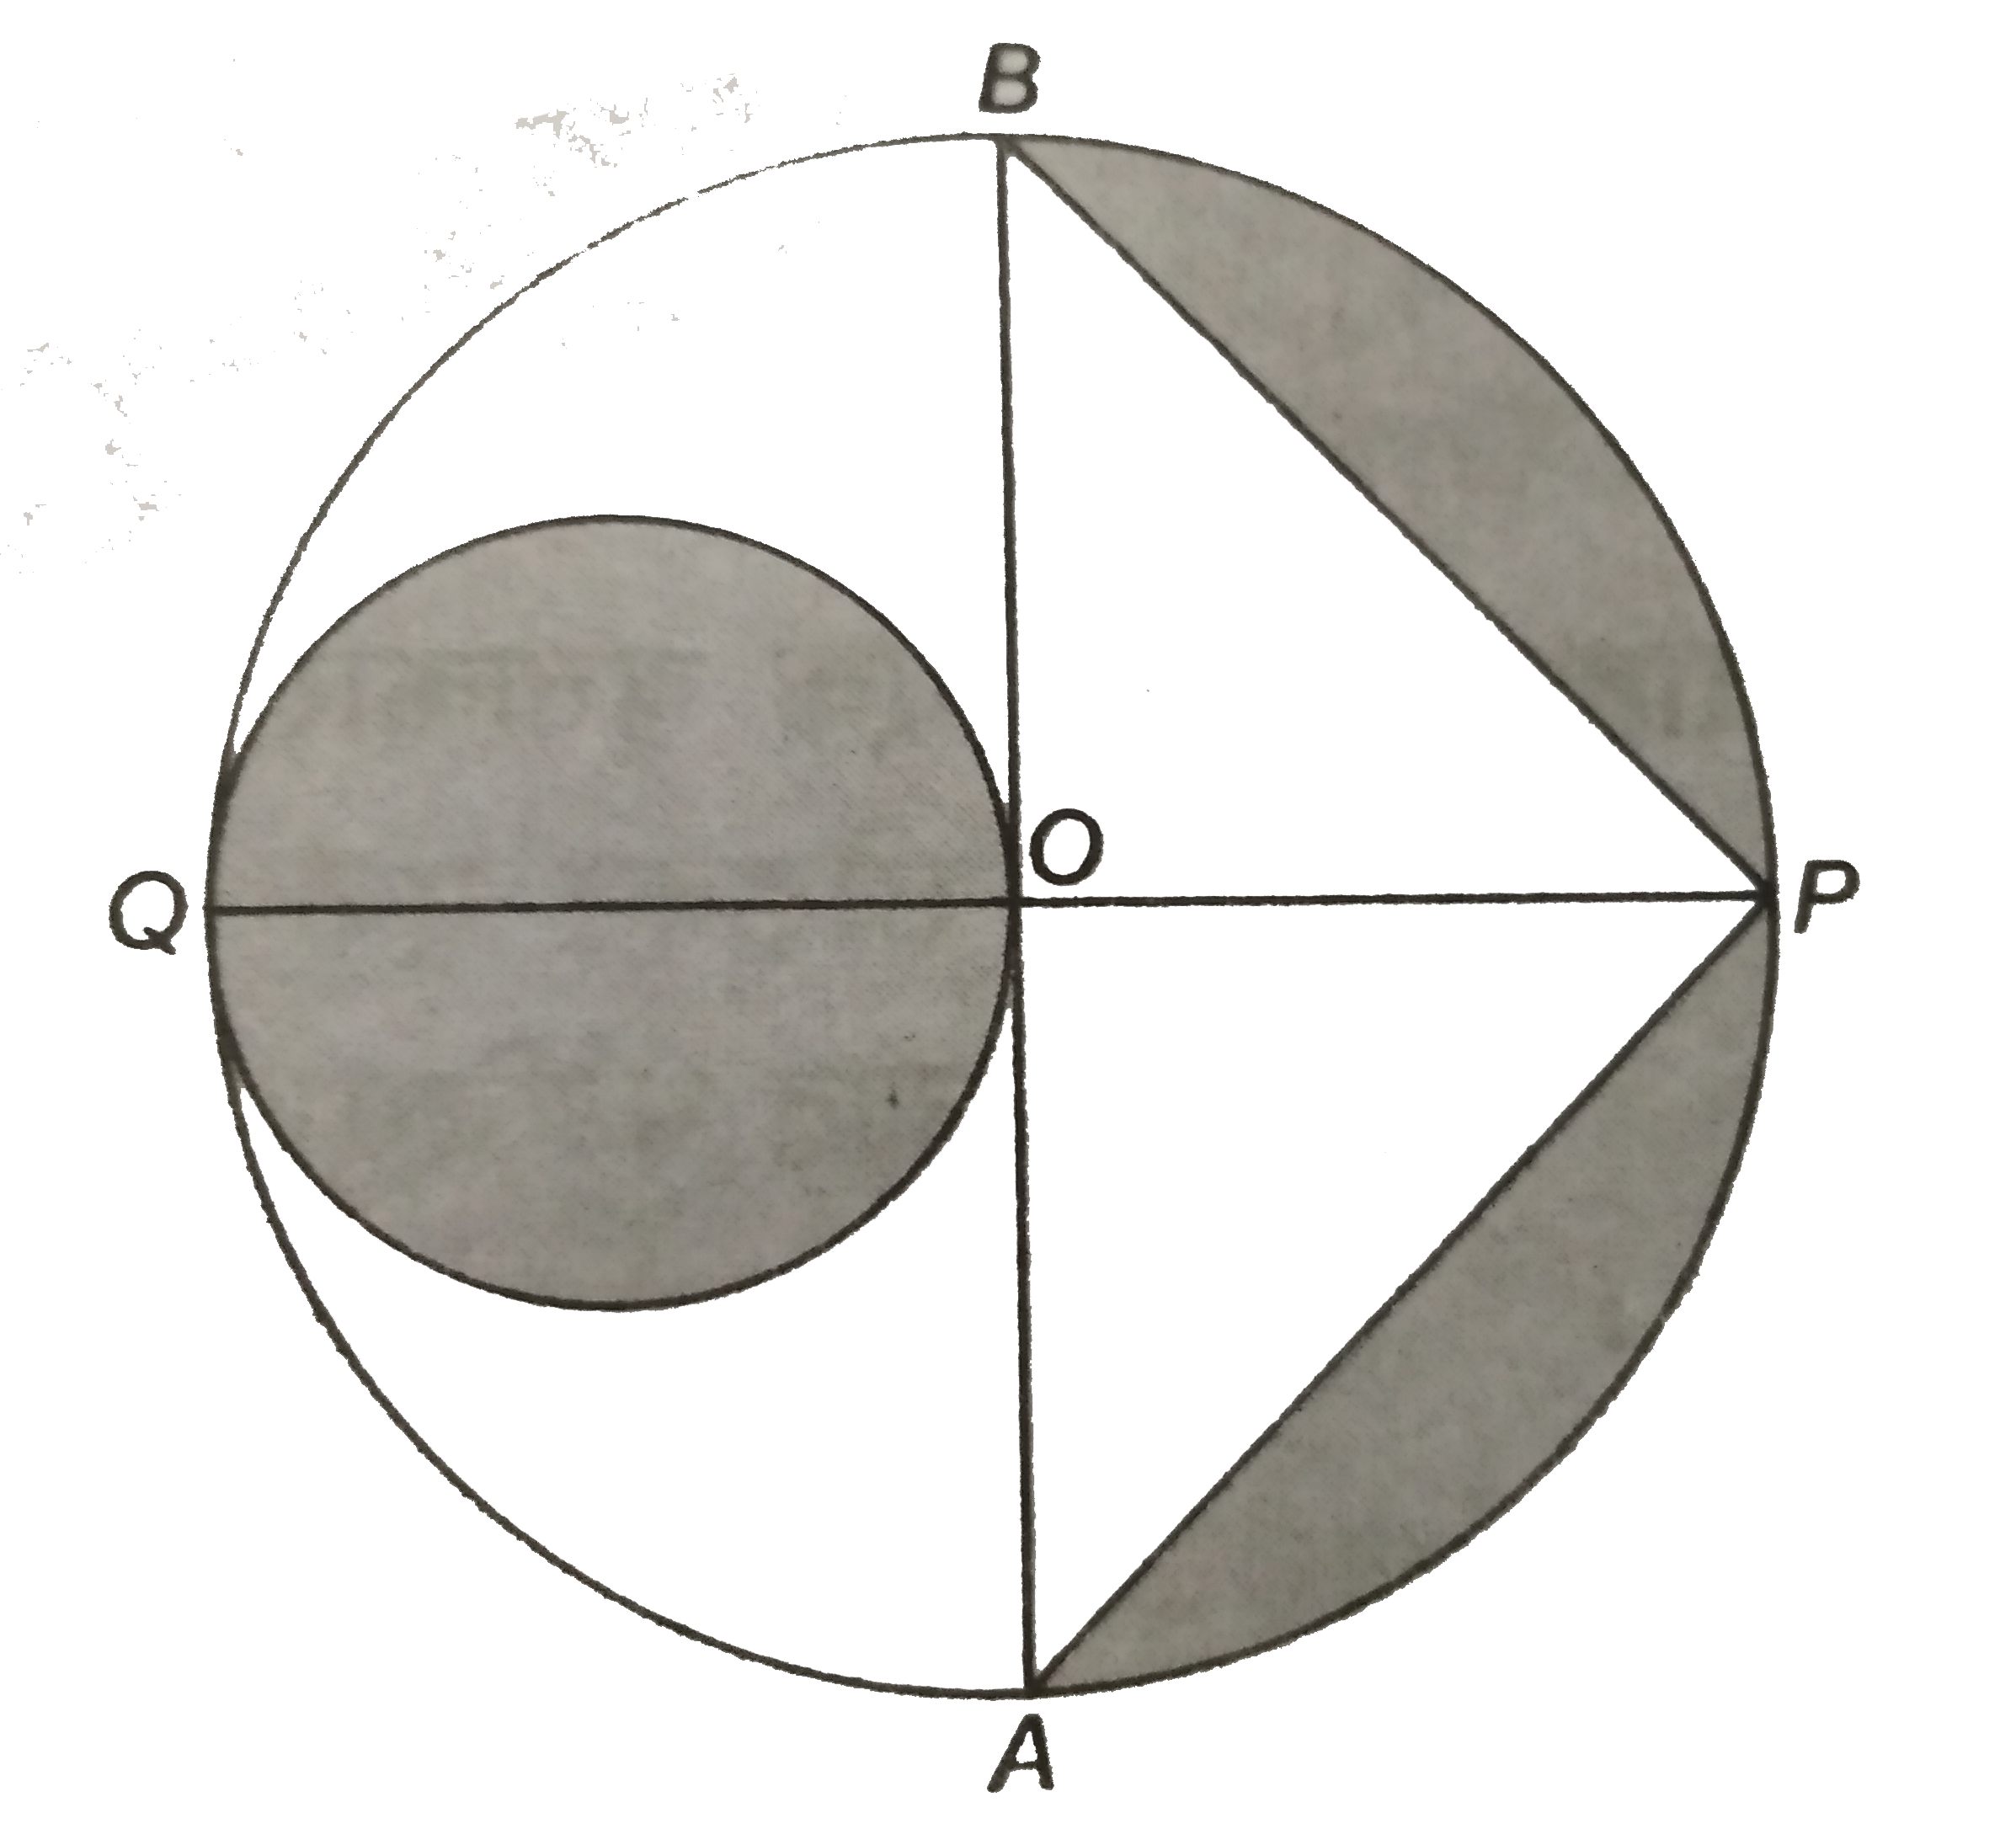 दी आकृति में , AB  और PQ  एक  वृत्त के लंबवत  व्यास है जिसका  केंद्र  O और त्रिज्या OA = 7  सेमी है ।  छायांकित भाग का क्षेत्रफल  ज्ञात  कीजिए ।